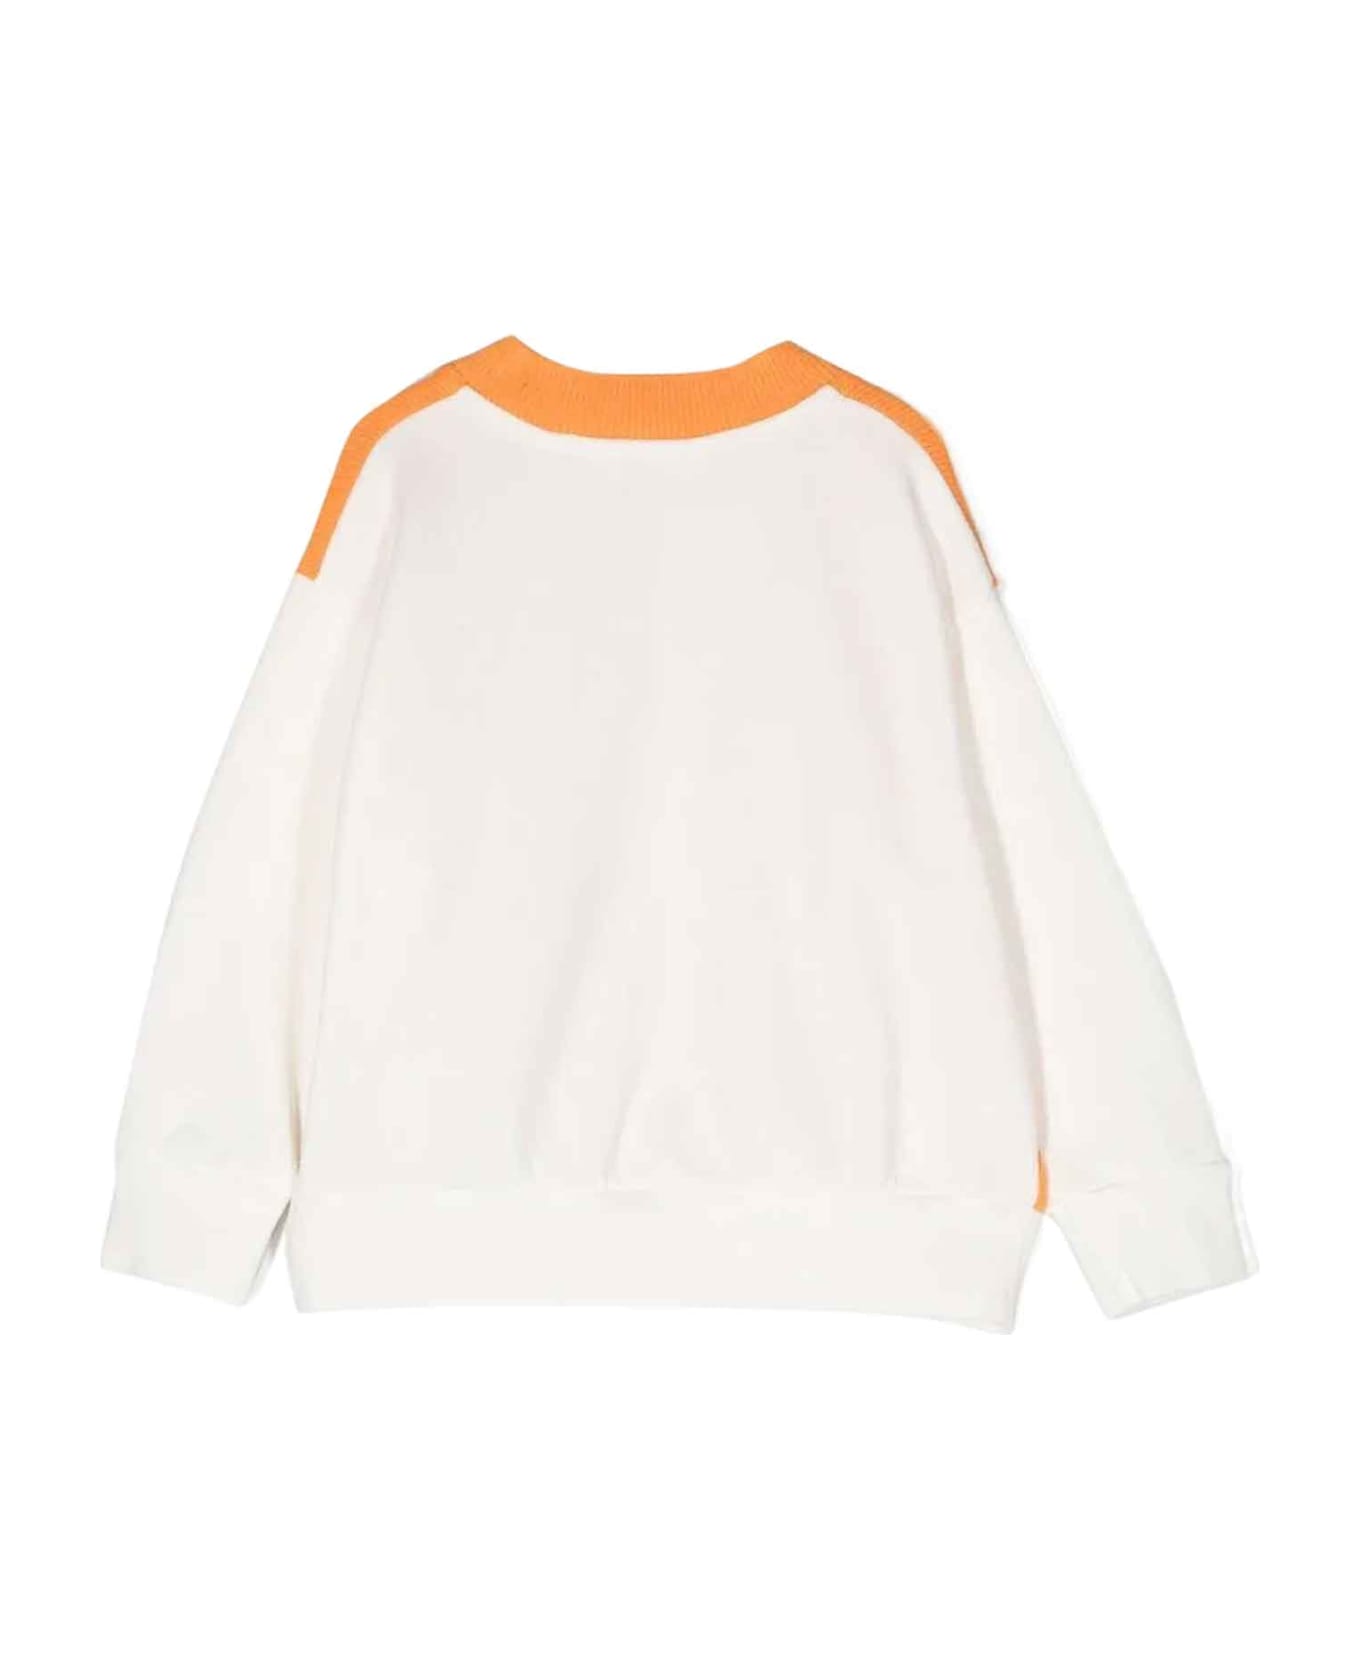 Palm Angels Orange Sweatshirt Boy - Arancione シャツ